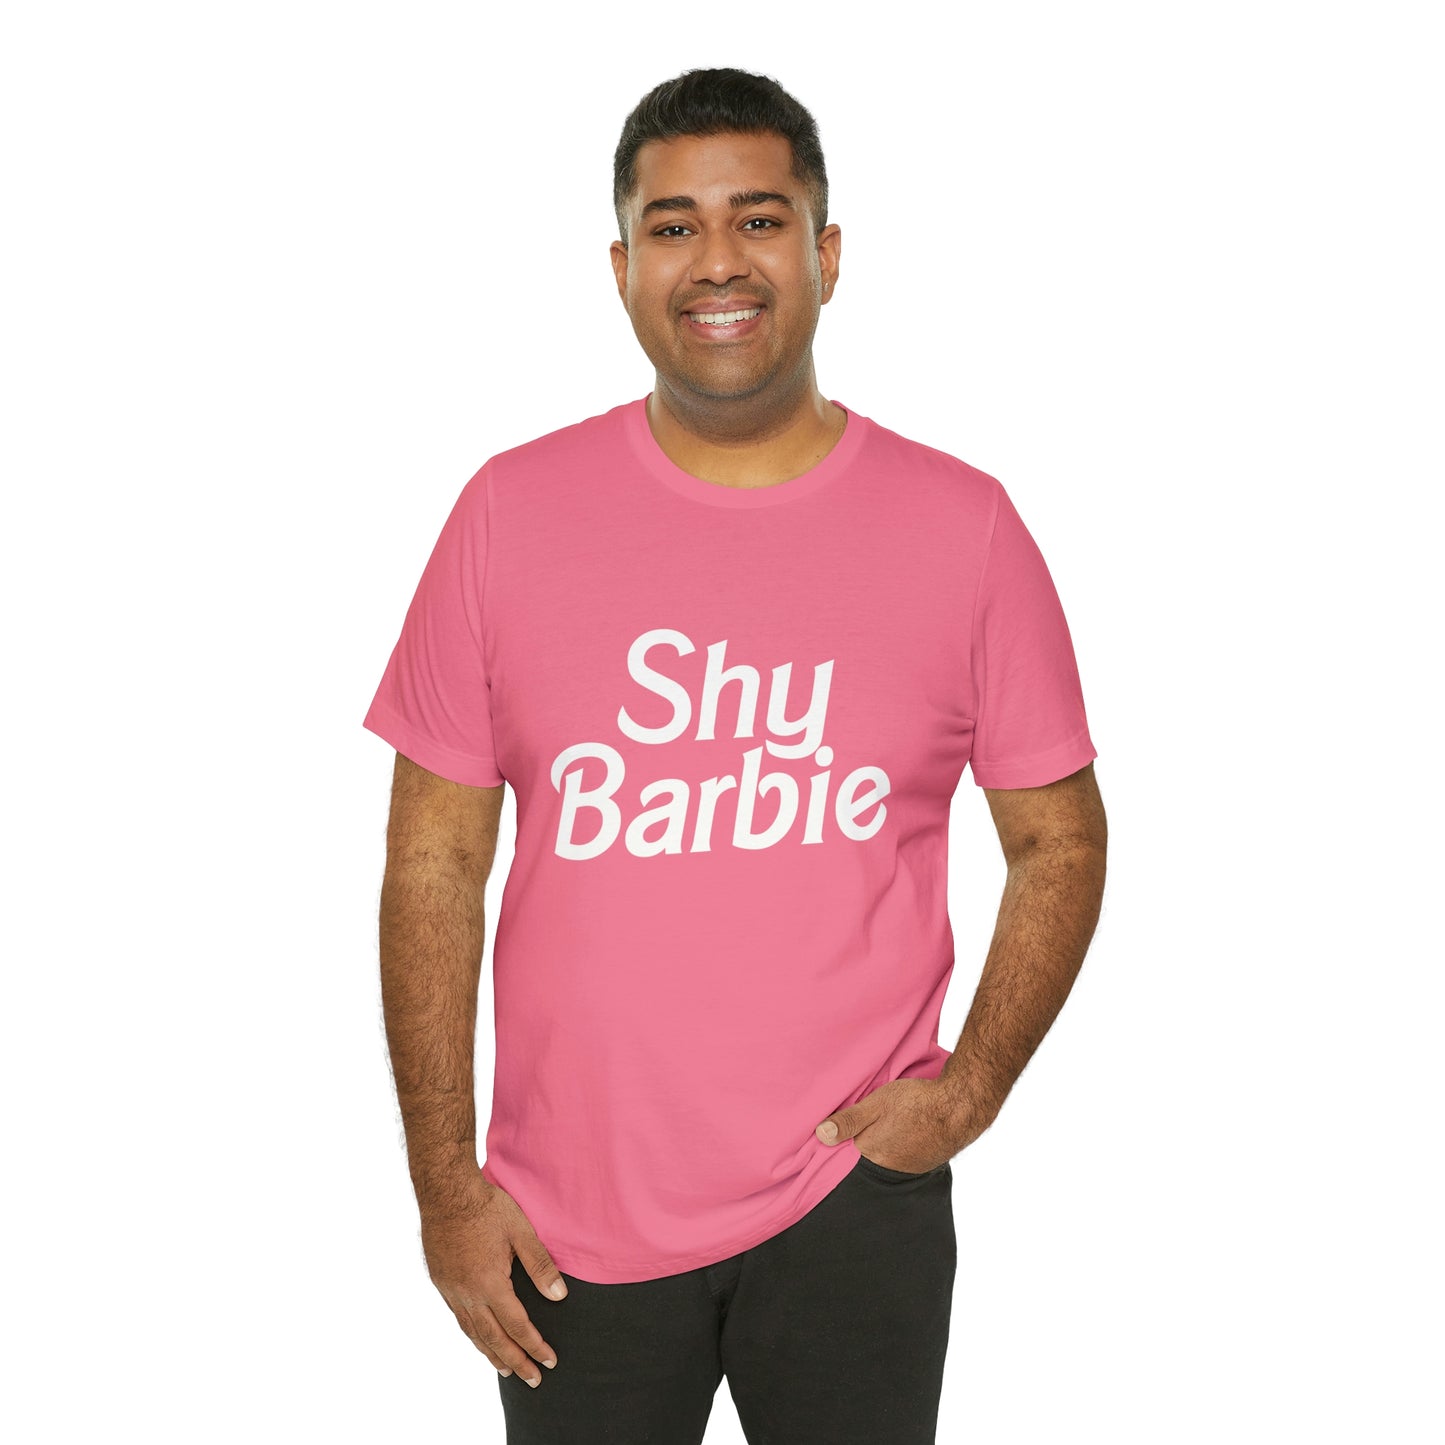 Shy Barbie